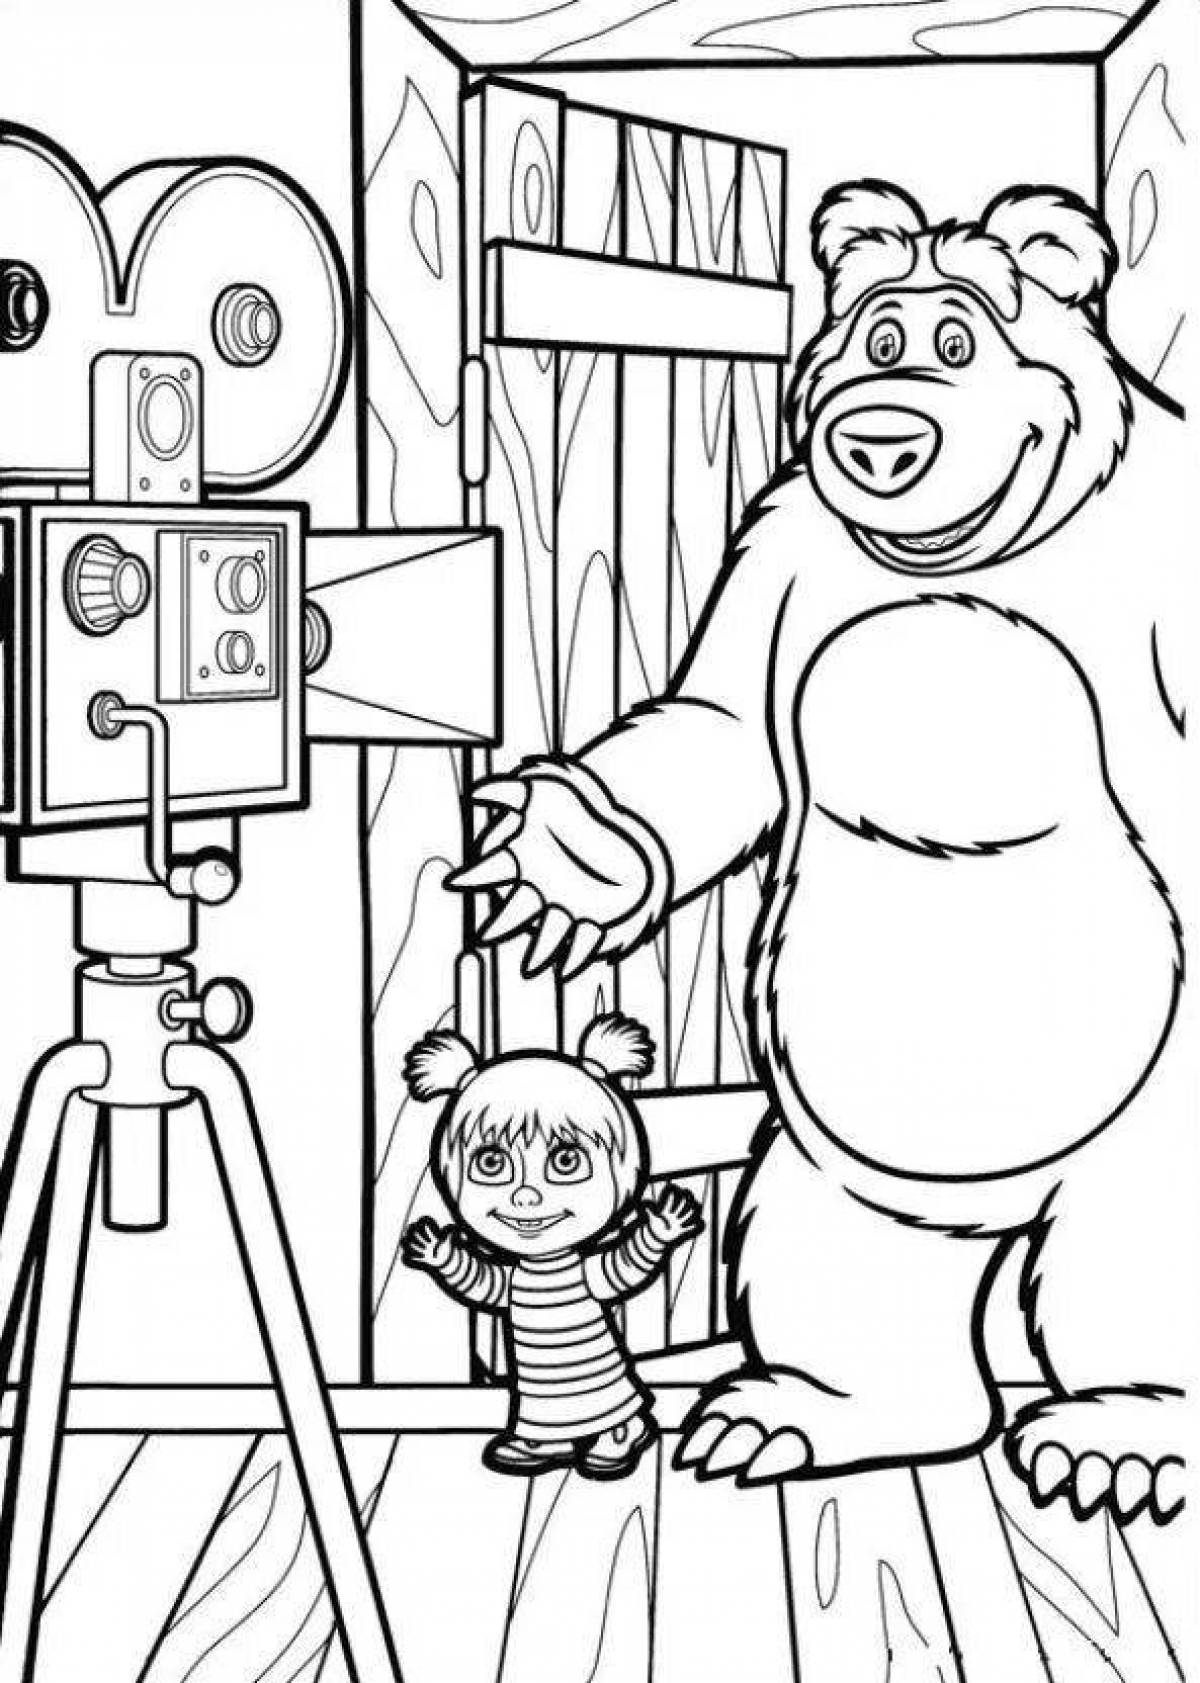 Magic bear coloring page